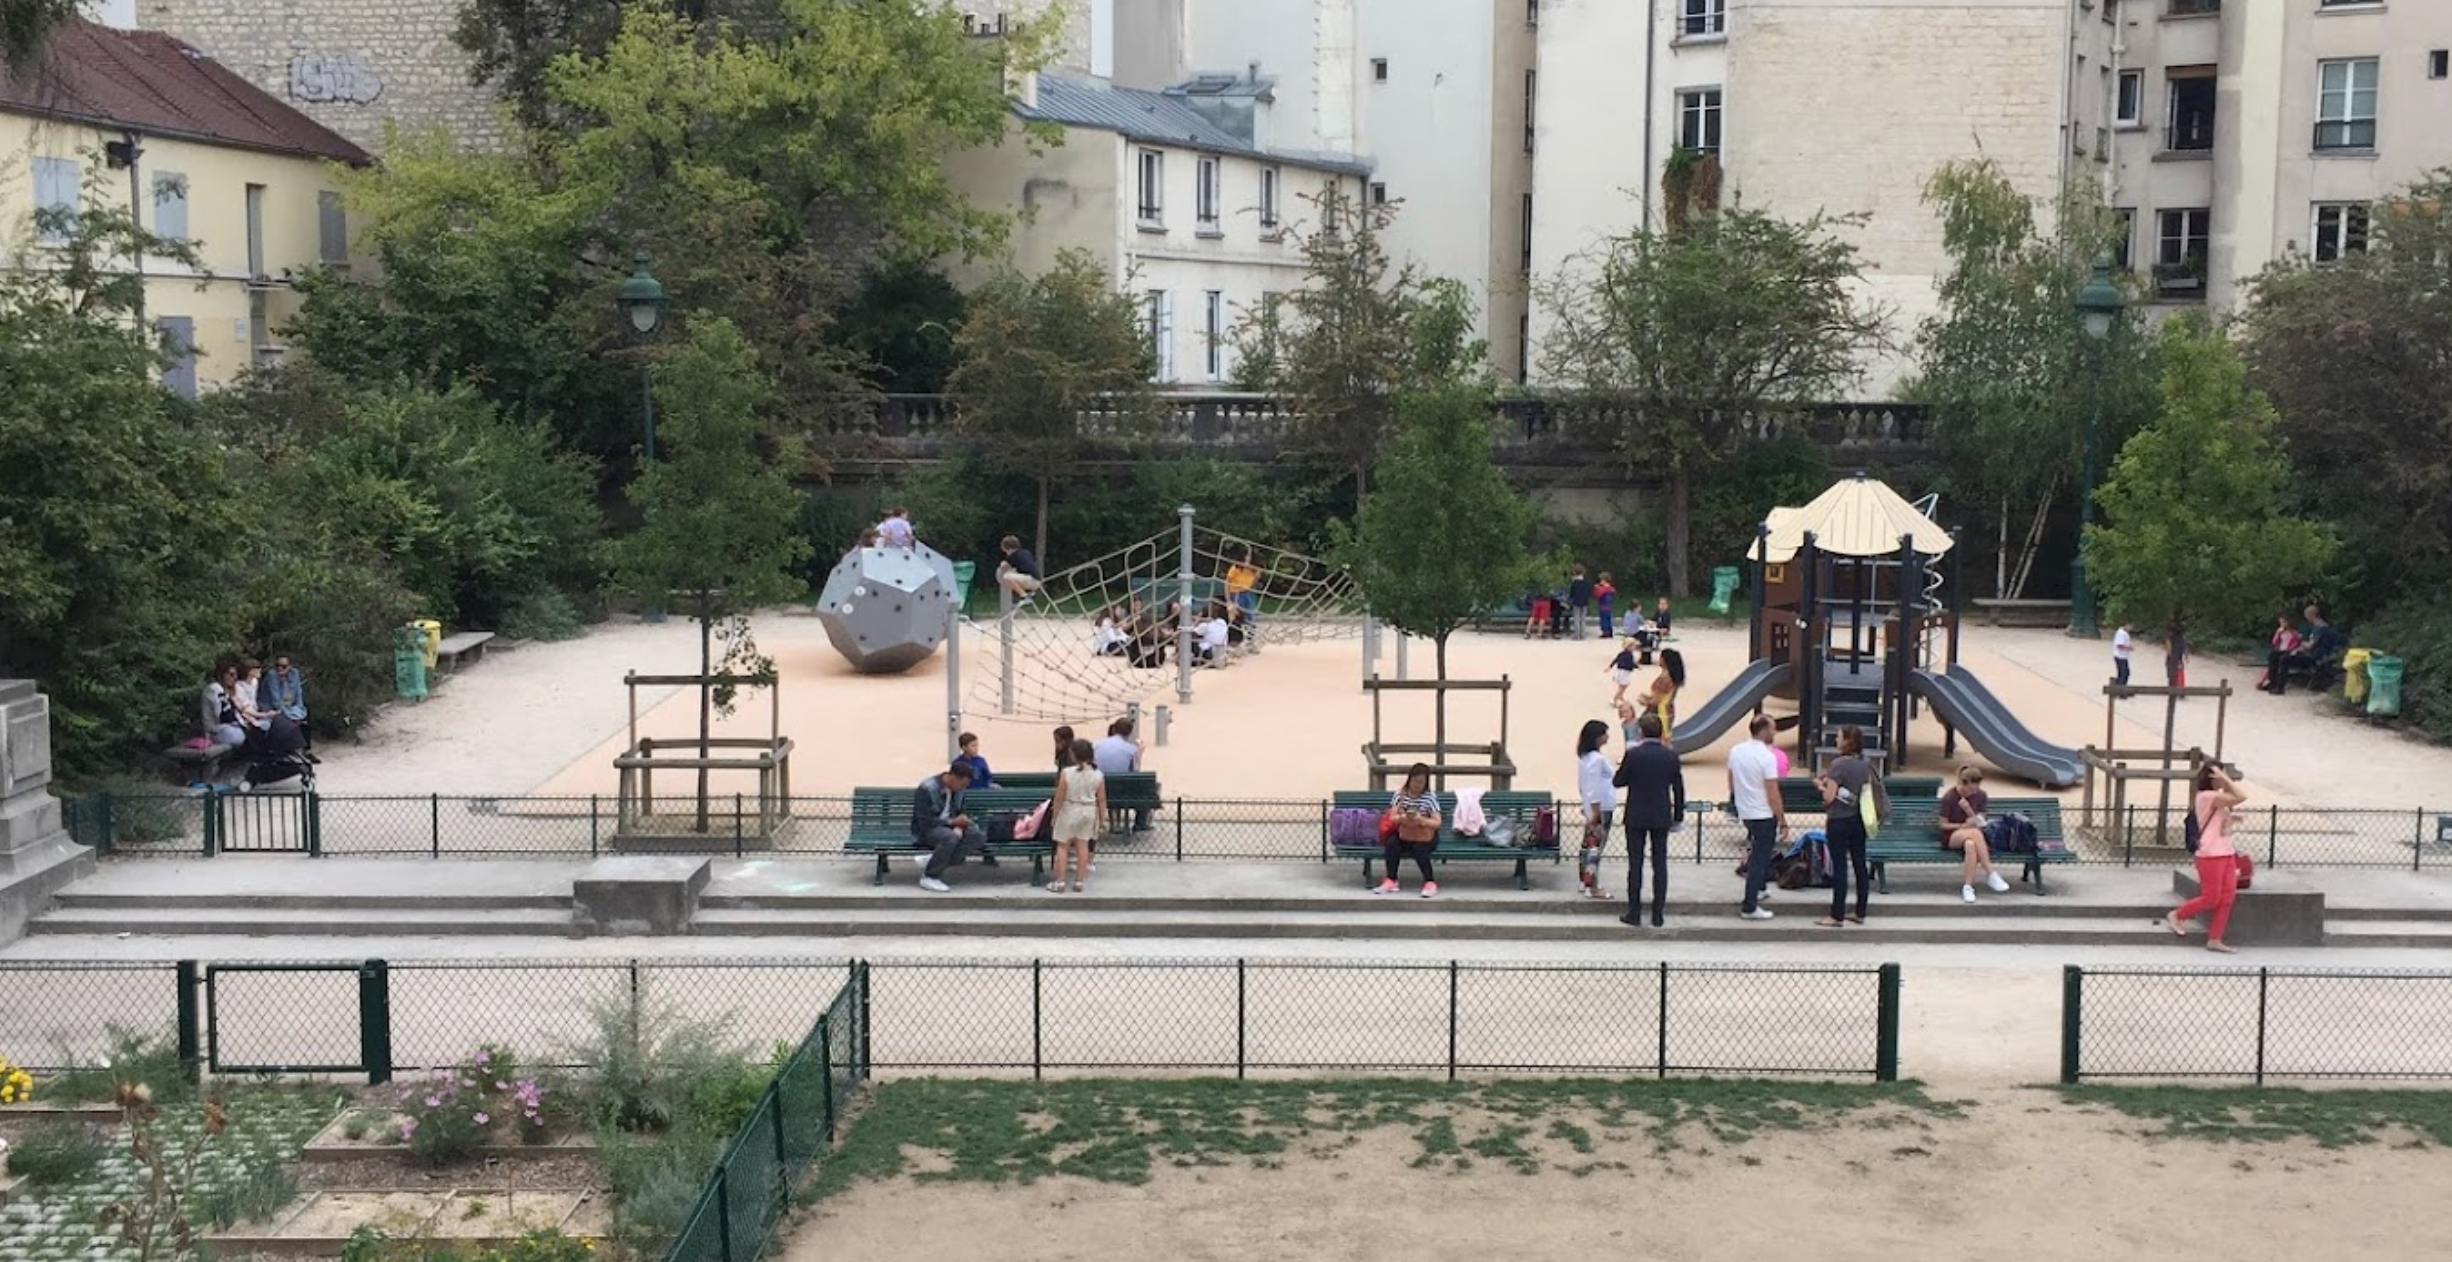 Playground in Square des arènes de Lutèce